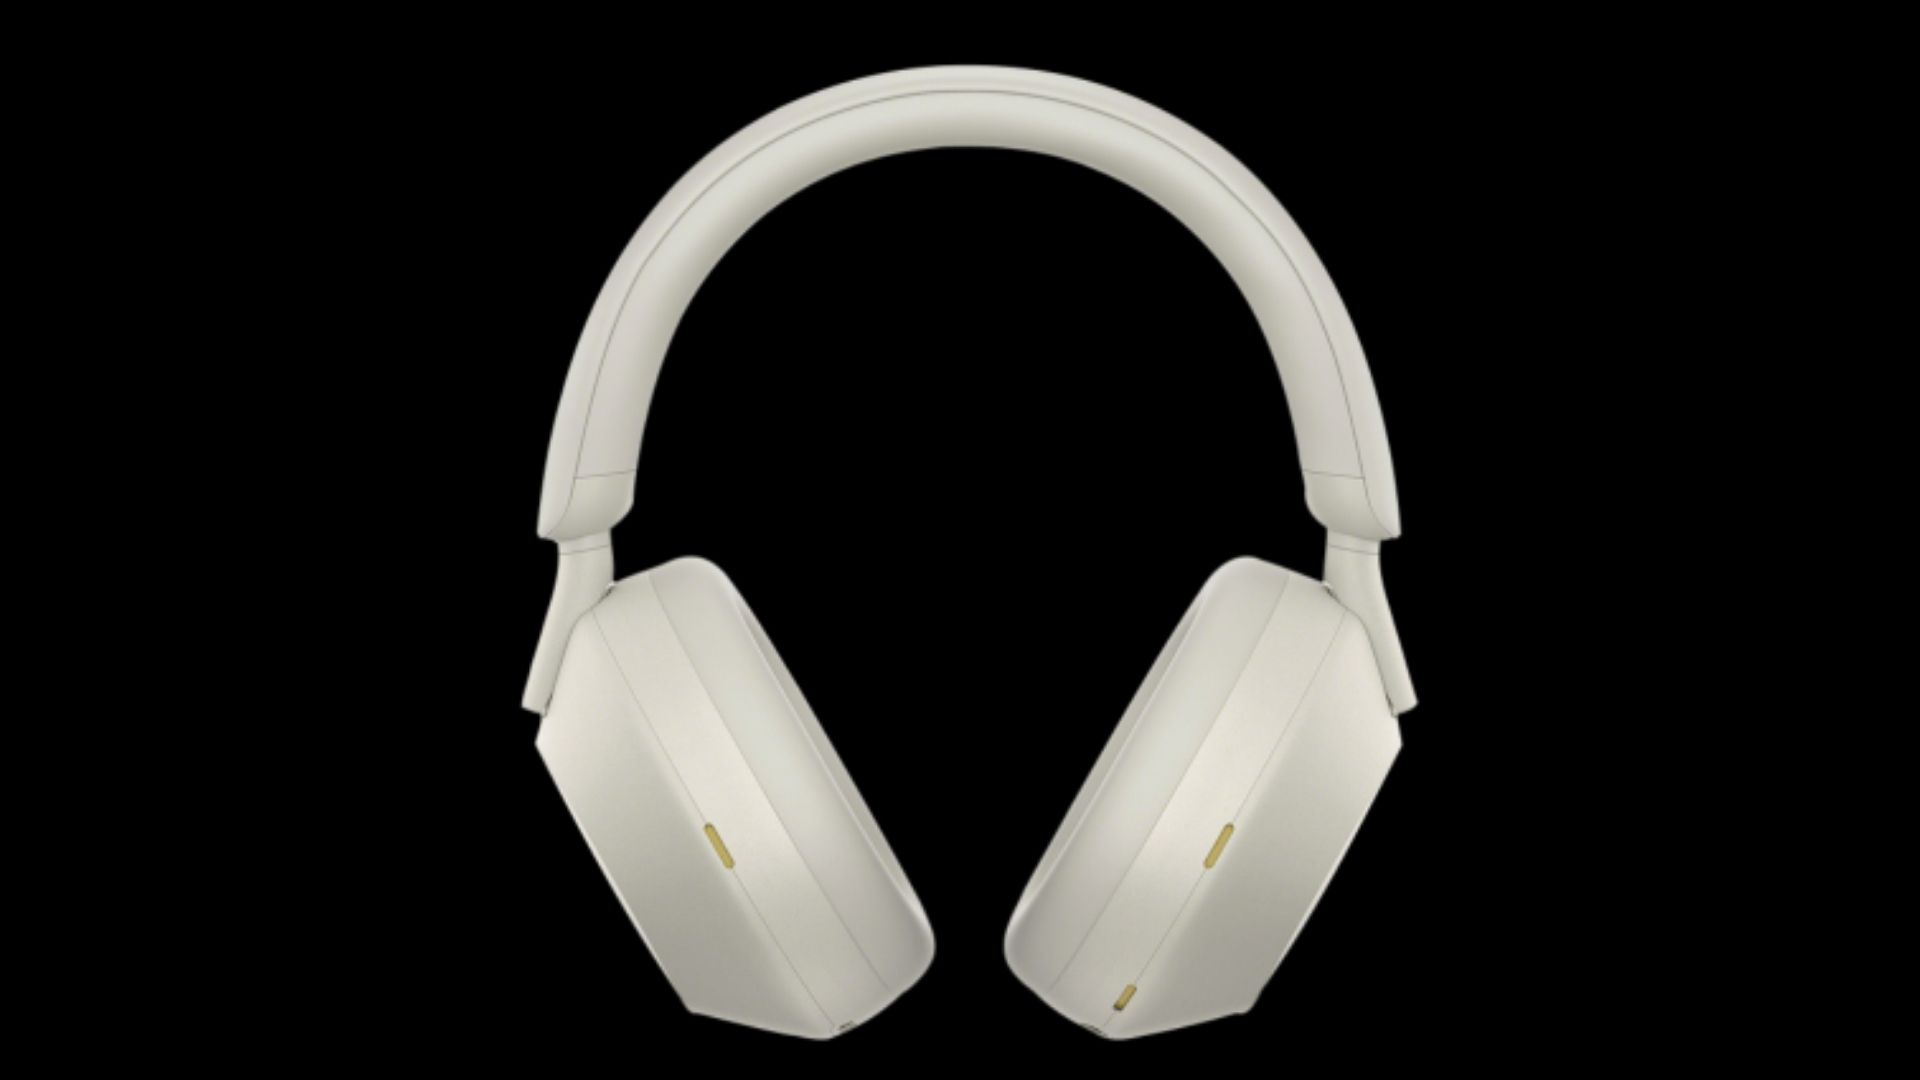 xm5 sony headphones